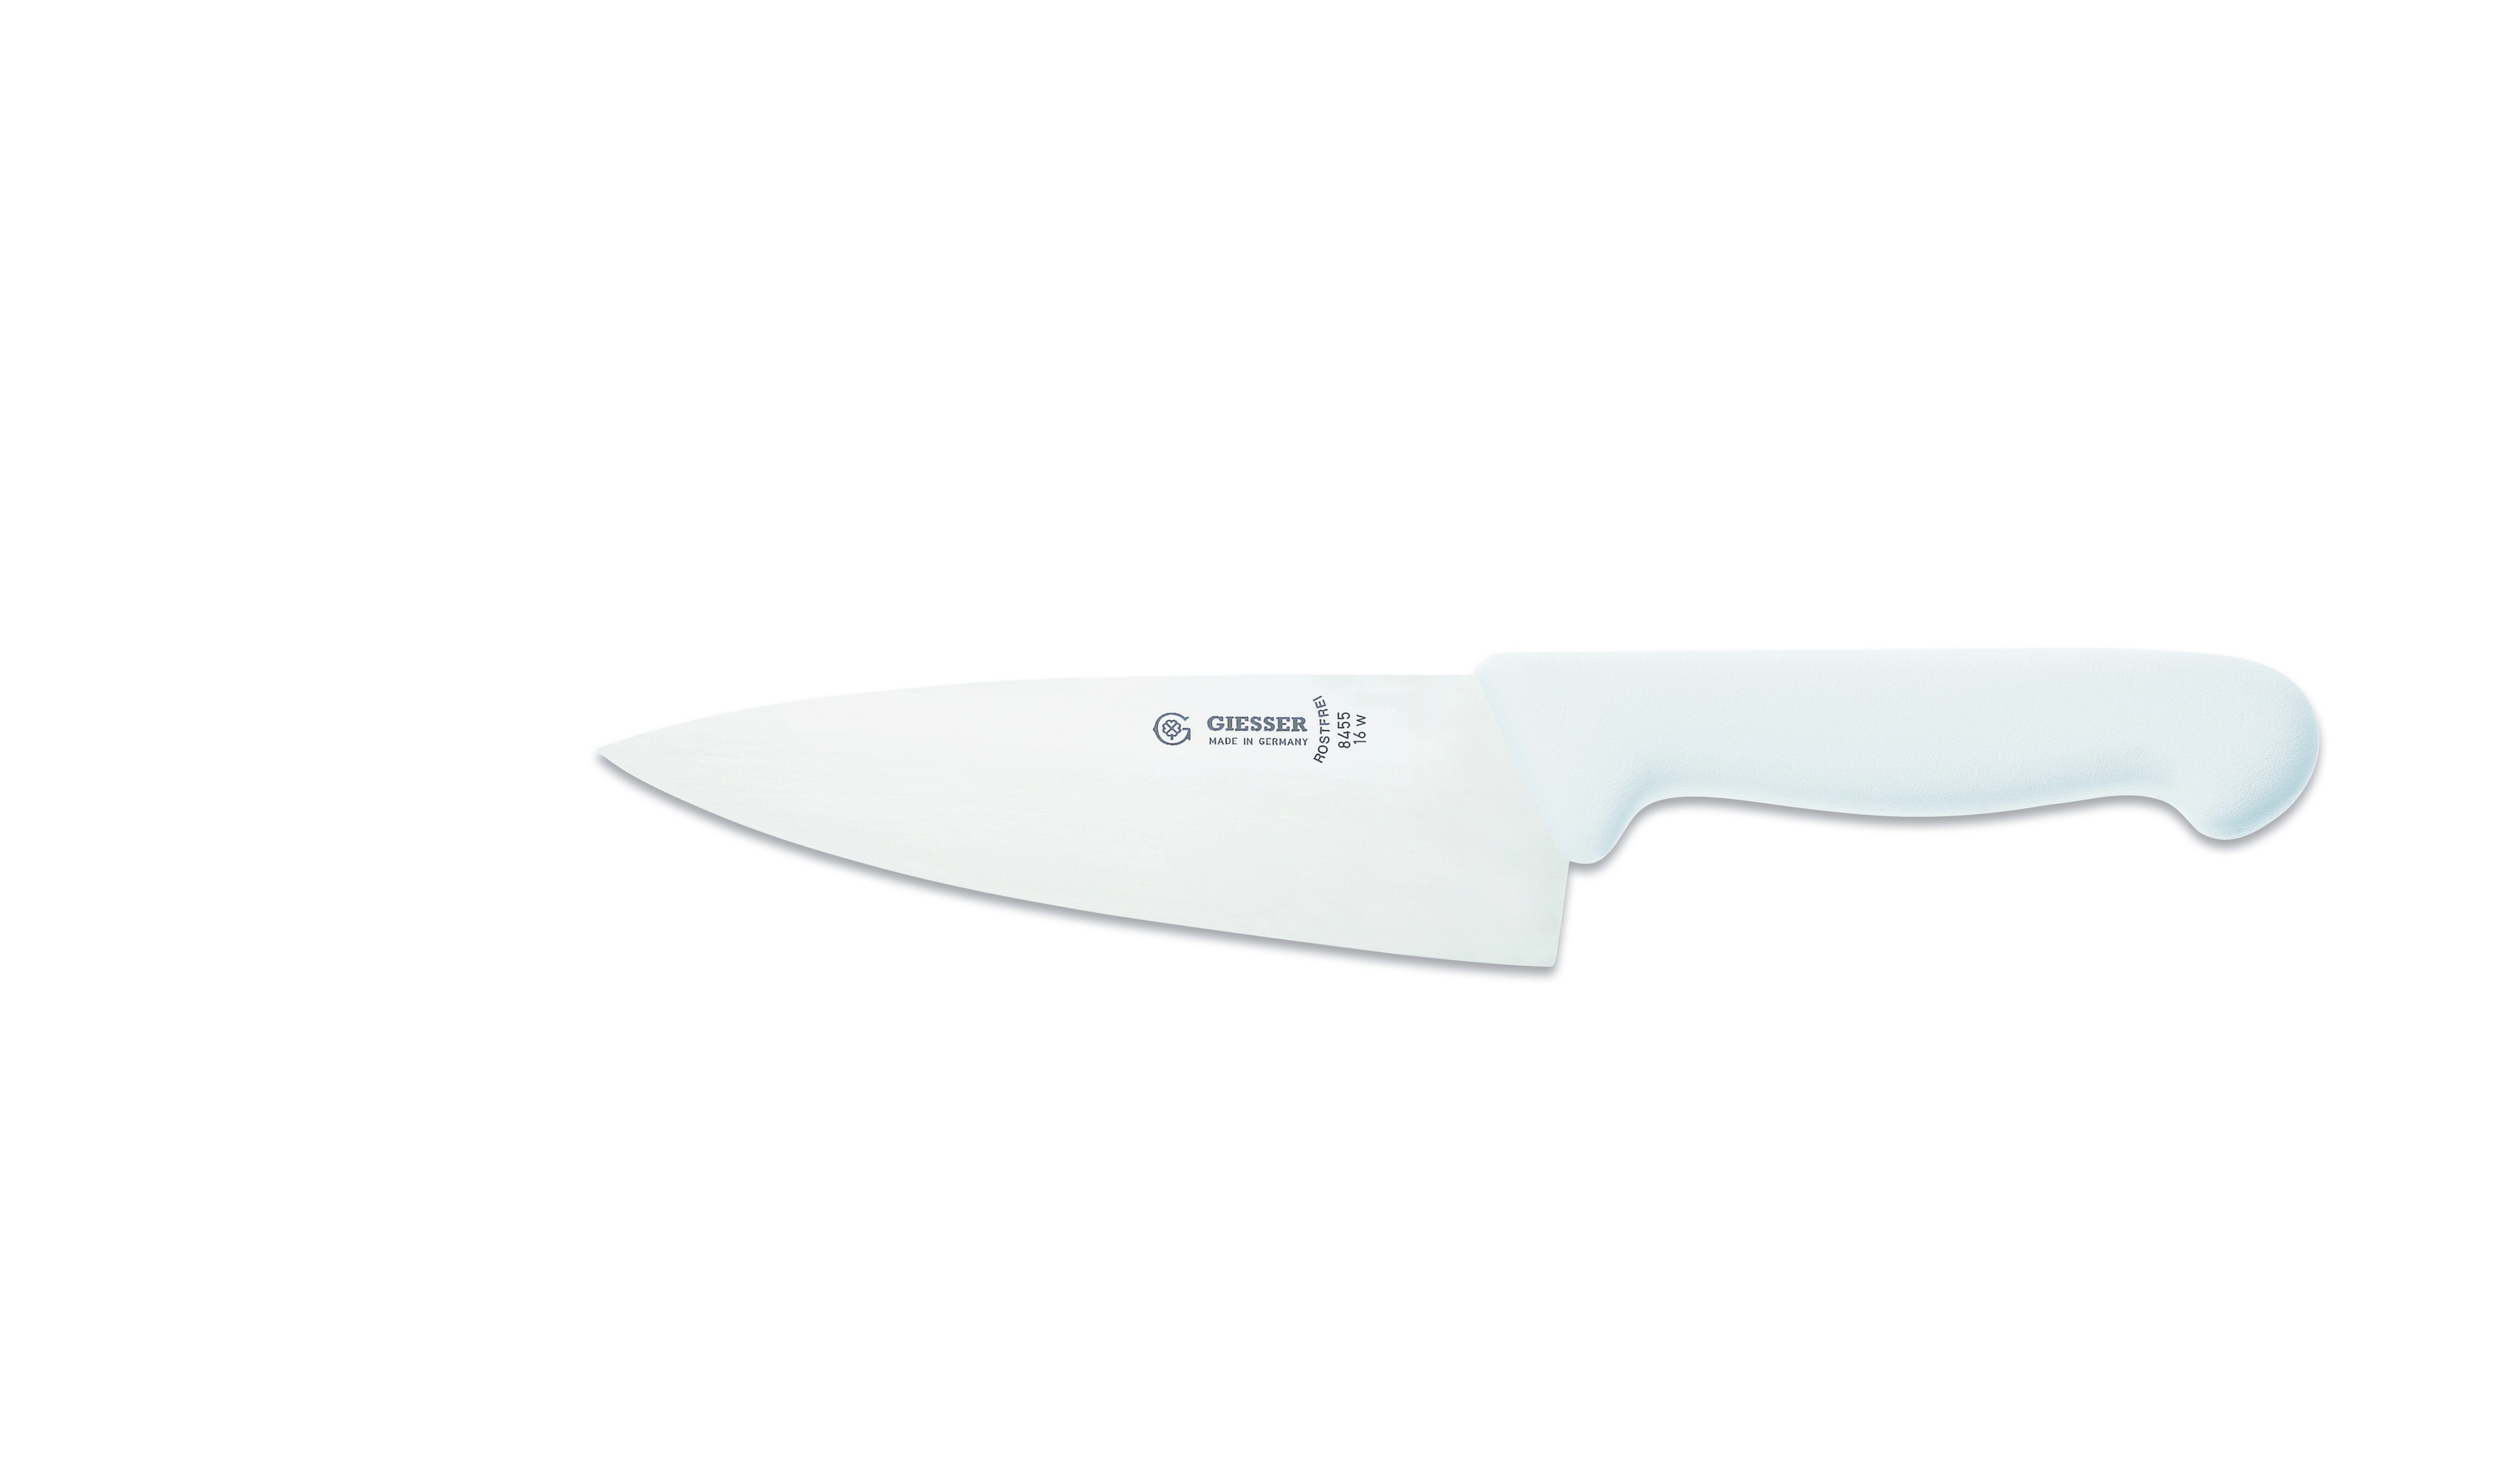 Ideal breit Handabzug, Rostfrei, Giesser breite Küchenmesser 8455, Küche weiß Kochmesser jede Form, scharf, für Messer